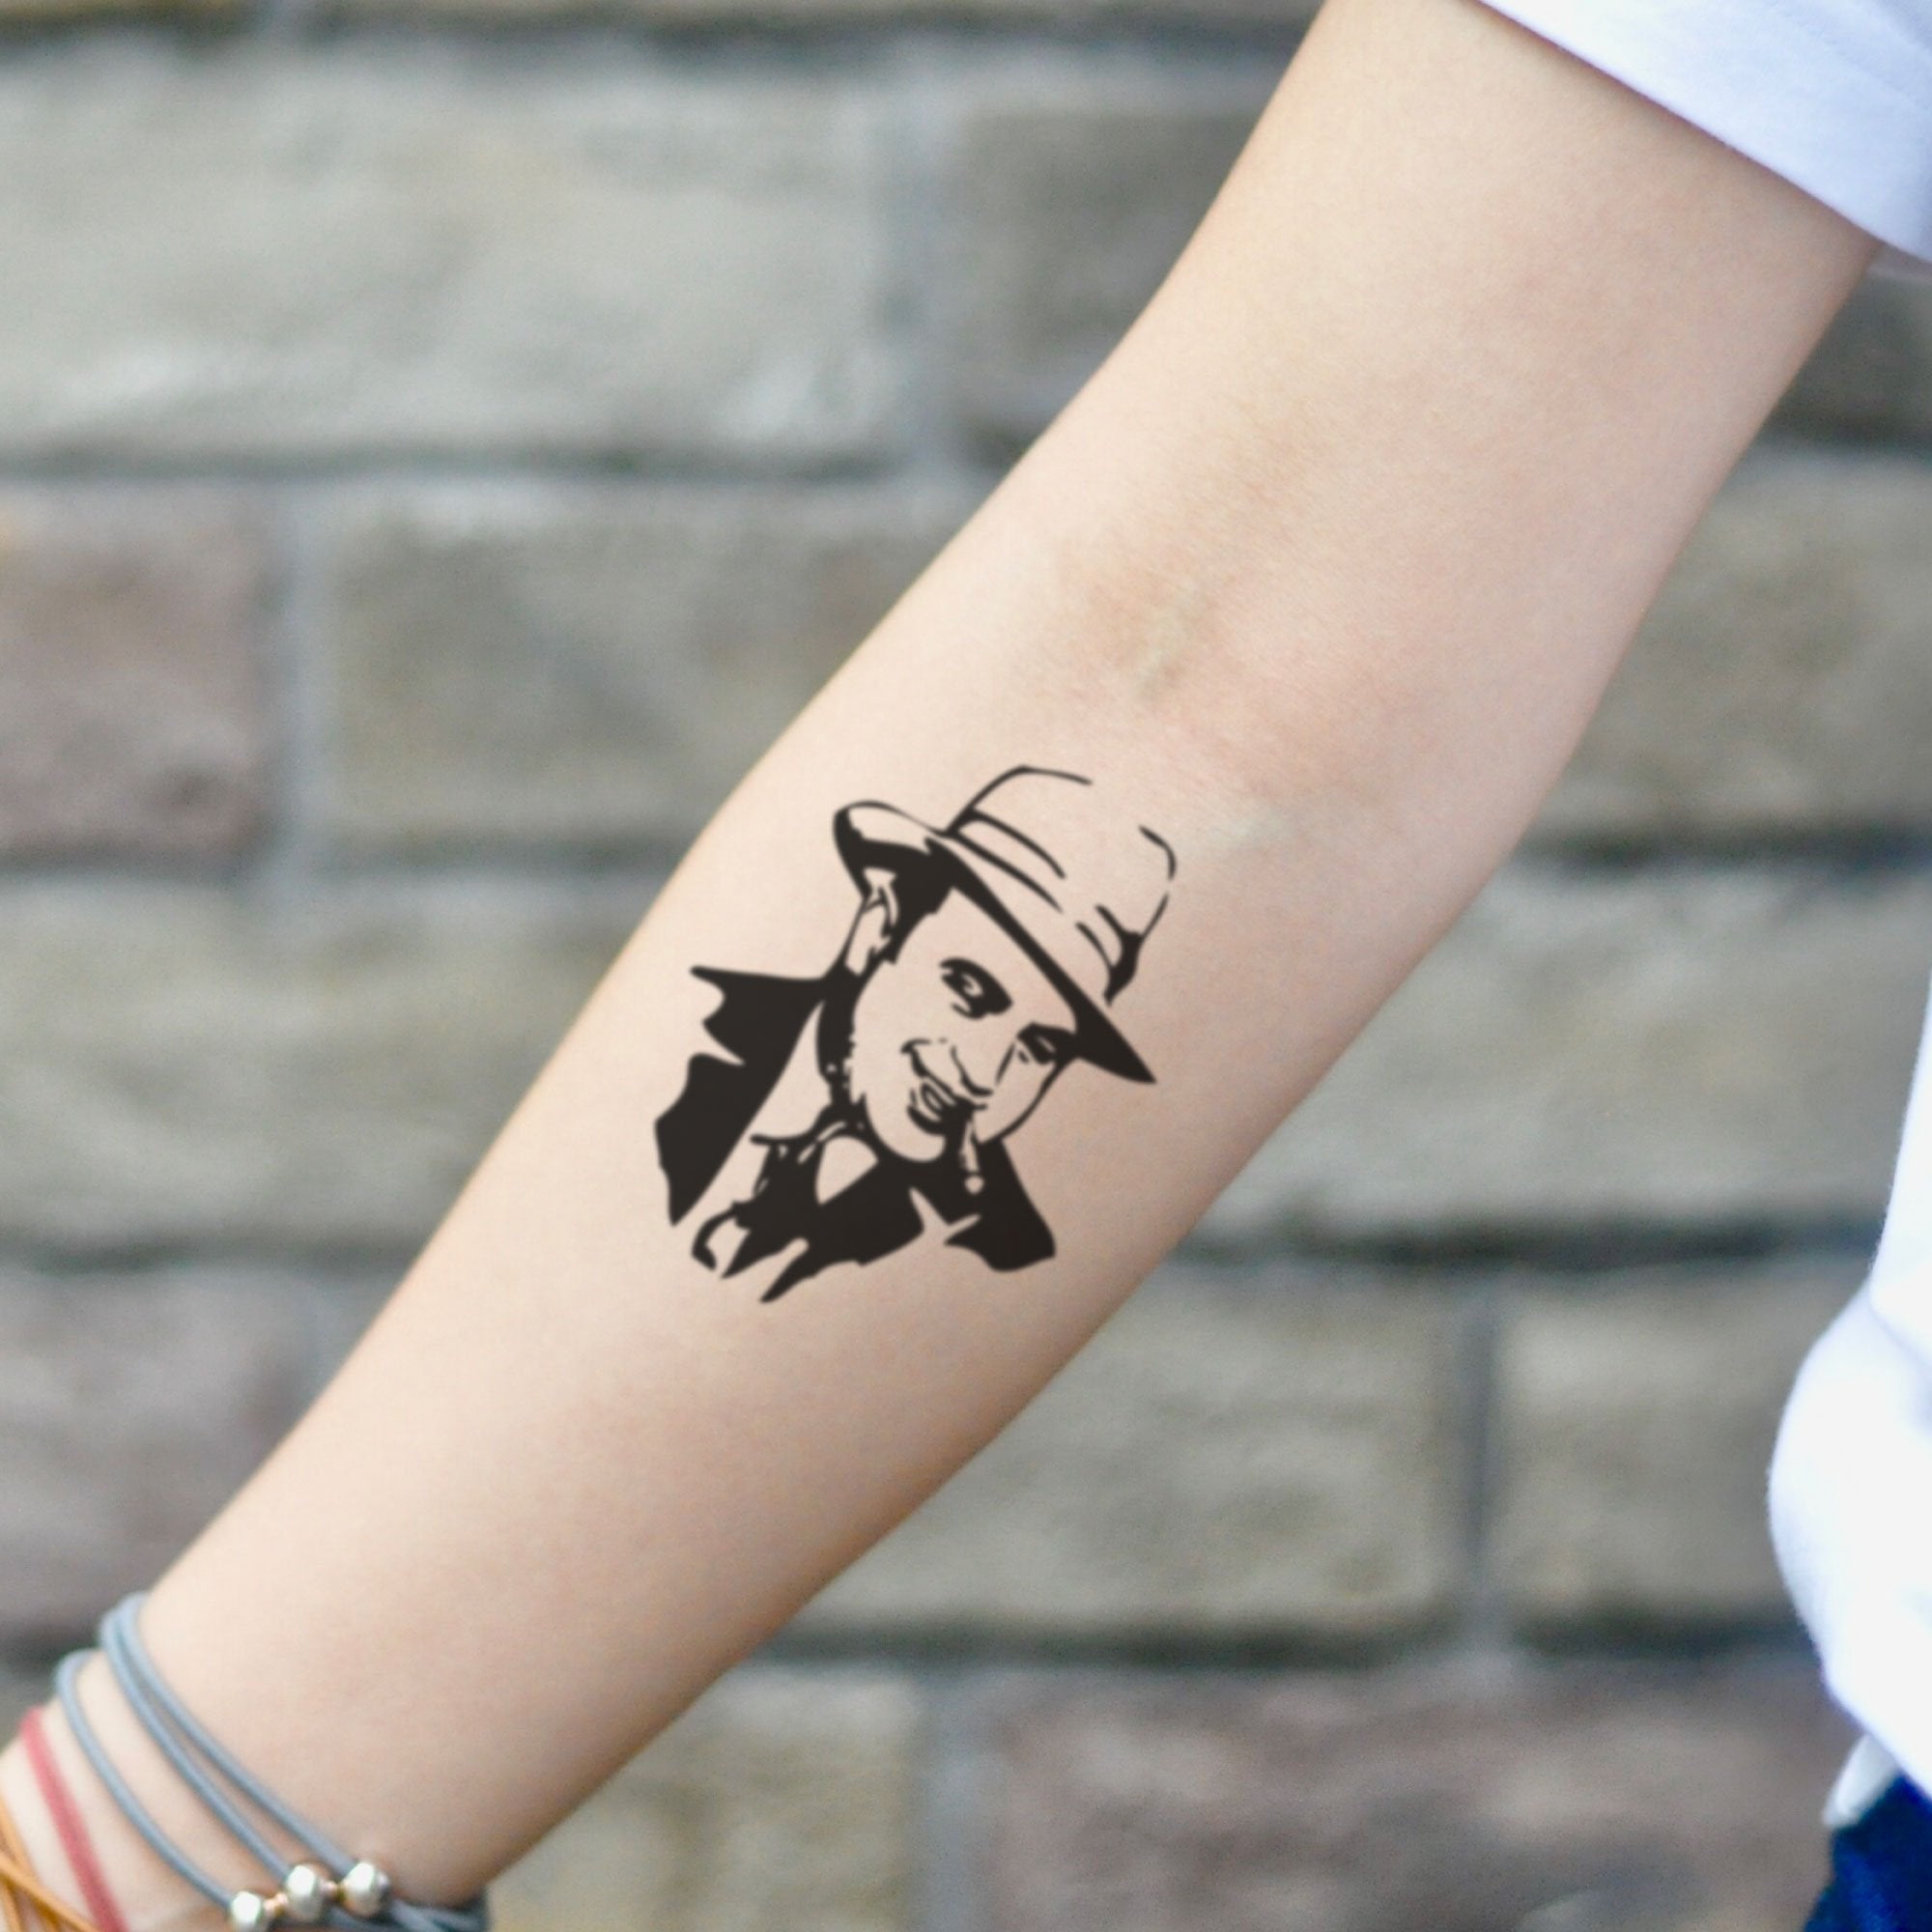 Tattoo al pacino  Godfather tattoo Hand tattoos Cute hand tattoos